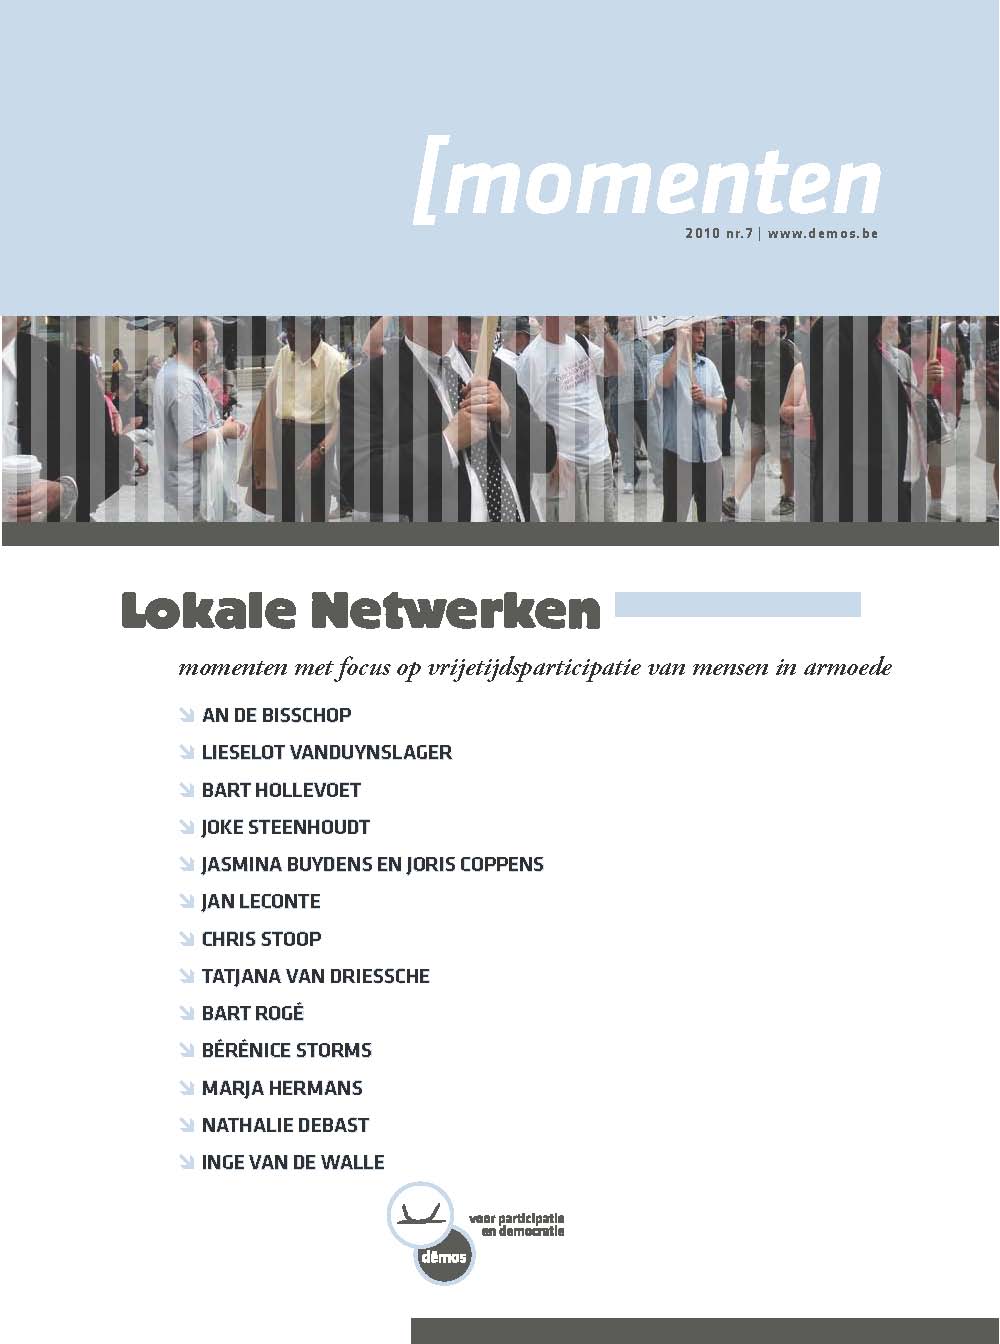 Lokale netwerken - Momenten #7 (2010). Momenten met focus op vrijetijdsparticipatie van mensen in armoede